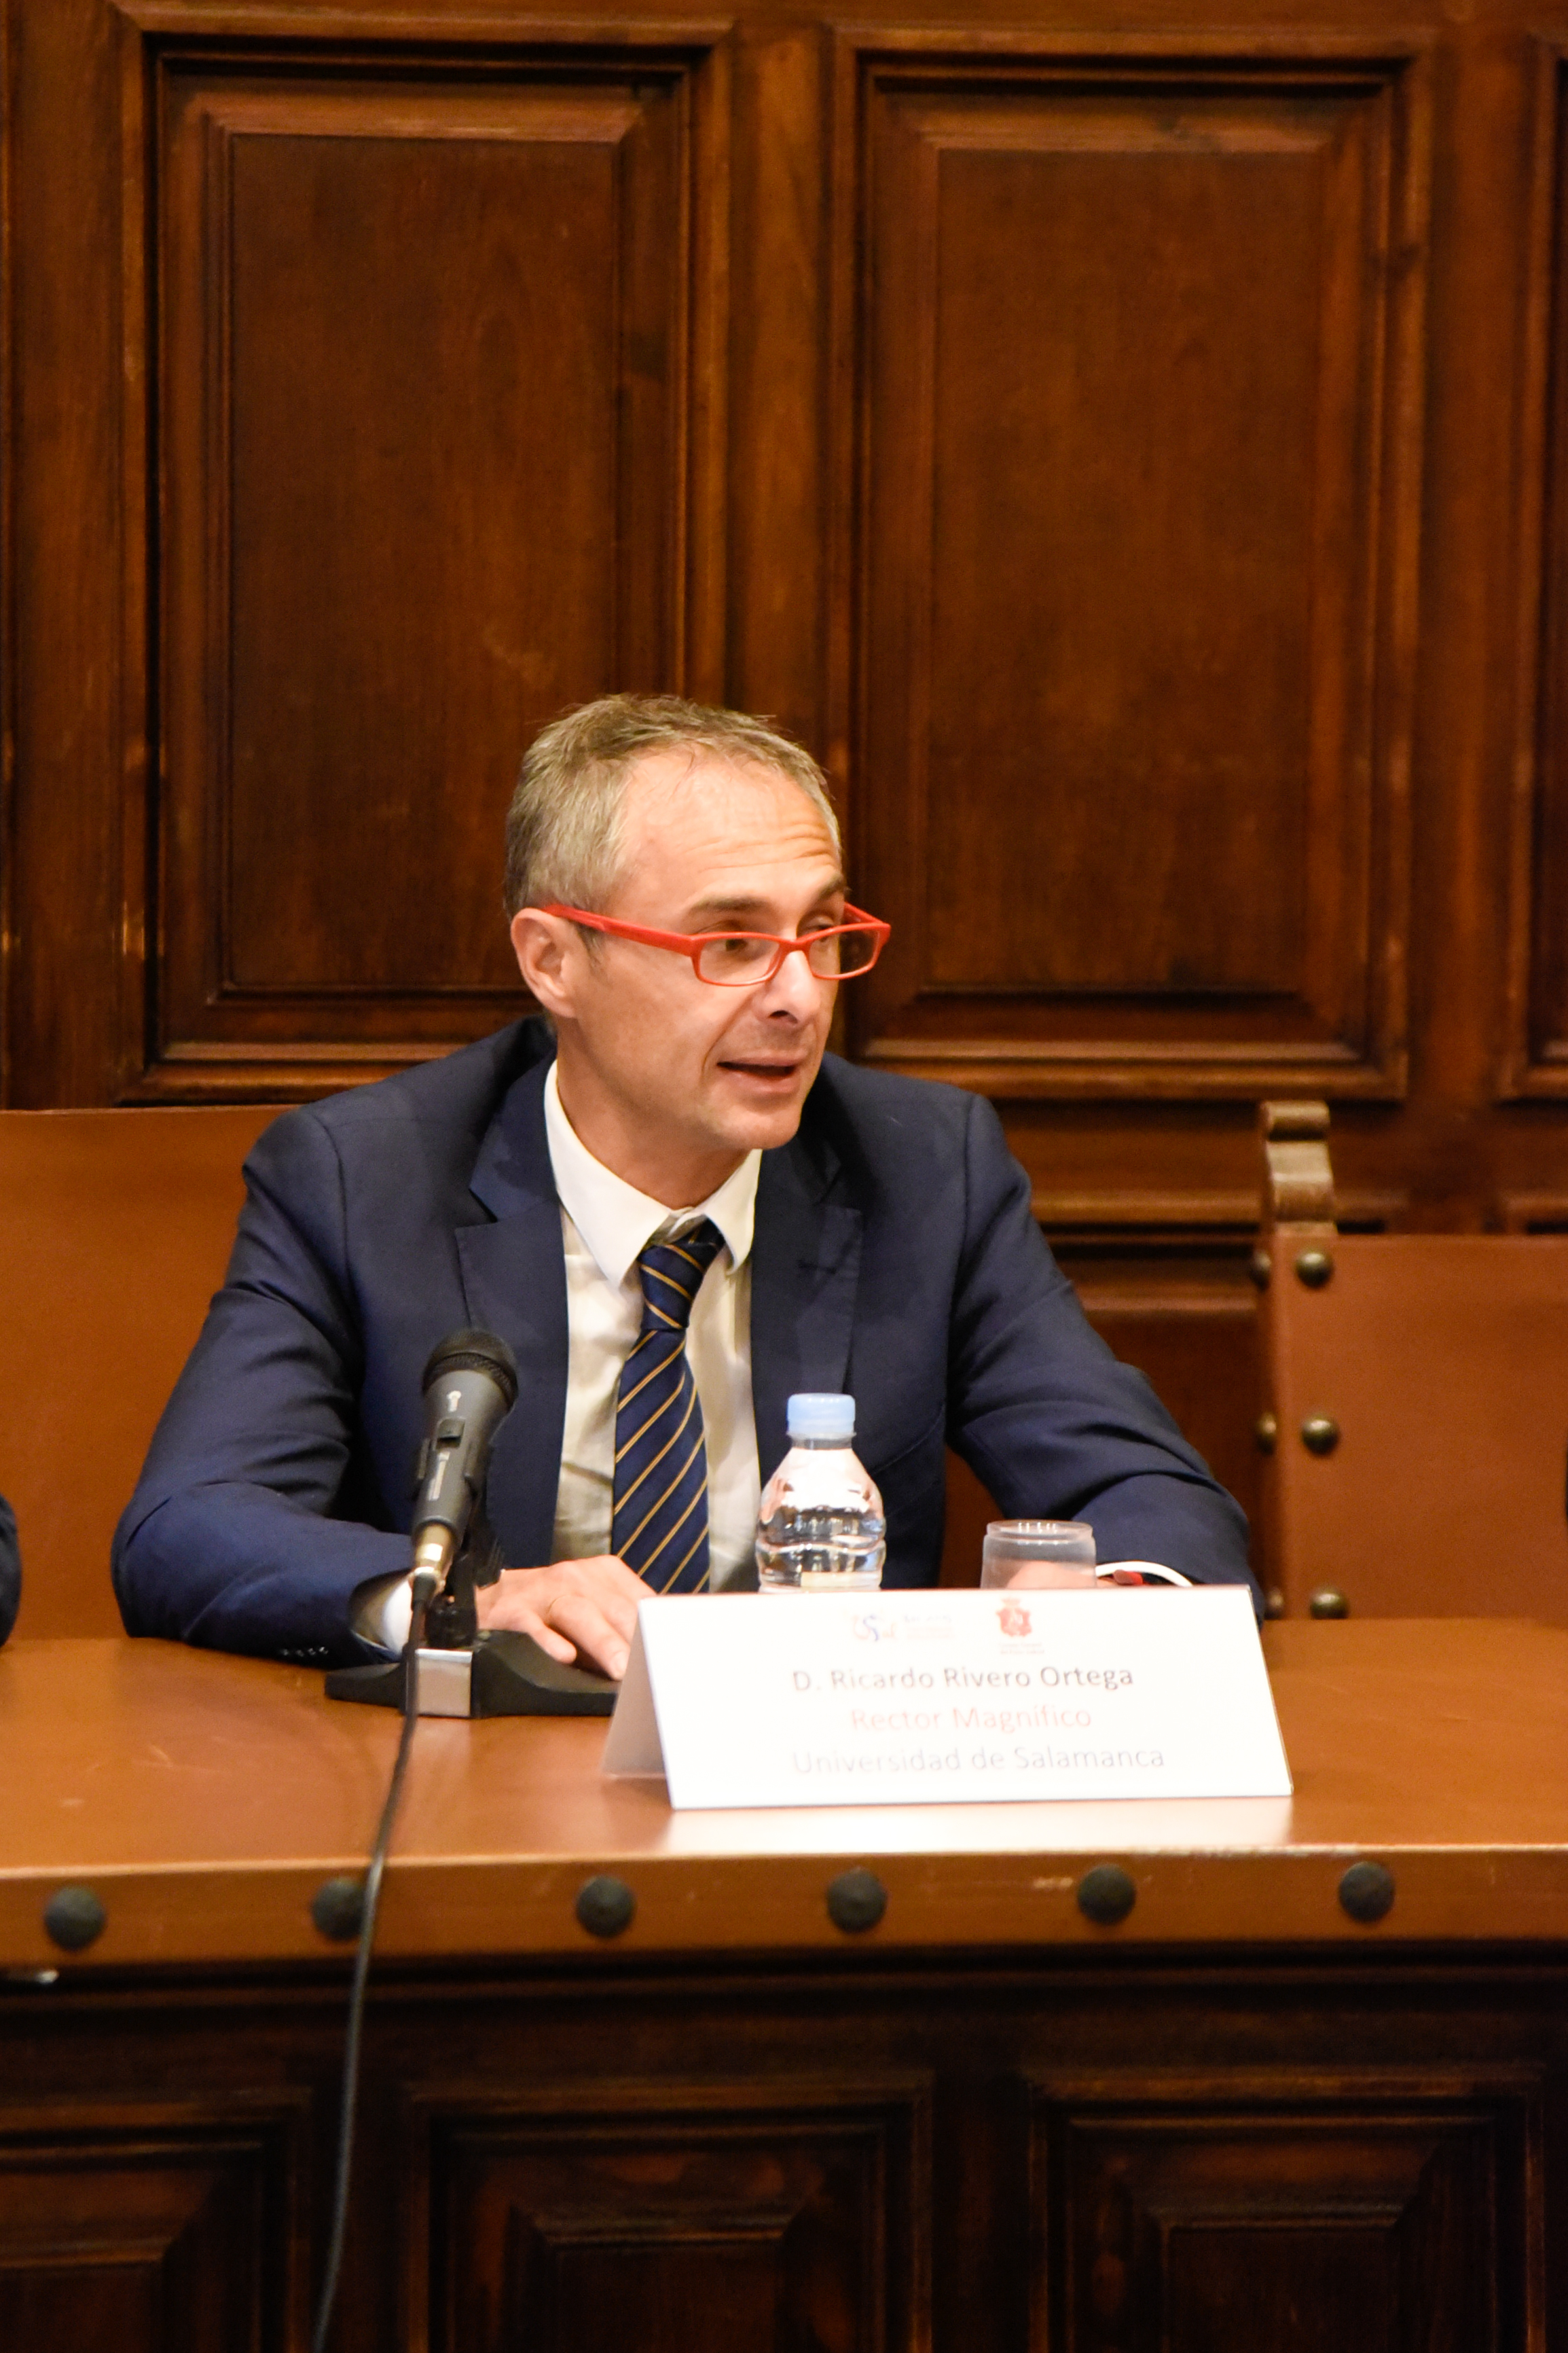 La Universidad de Salamanca acoge un Curso del Consejo General del Poder Judicial sobre ‘El anormal funcionamiento de la administración de justicia’